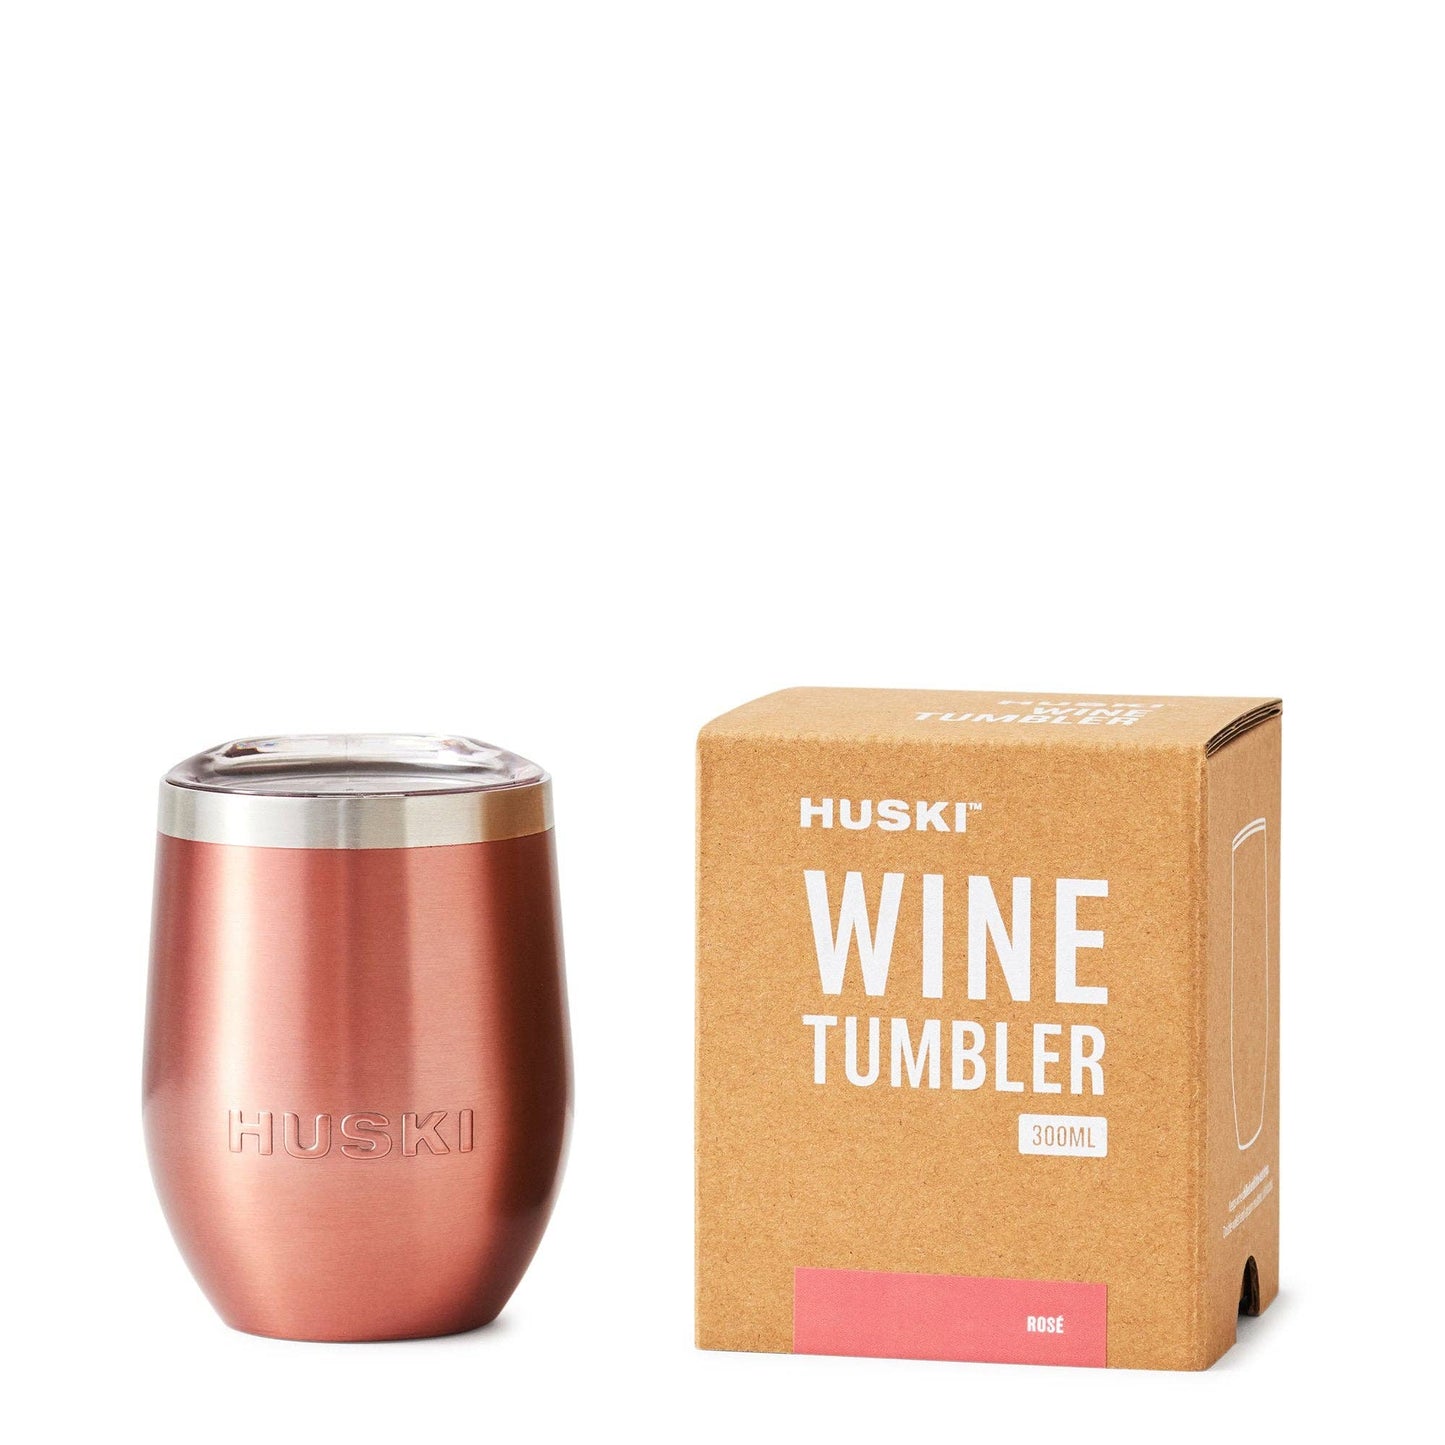 Huski Wine Tumbler - Rosé